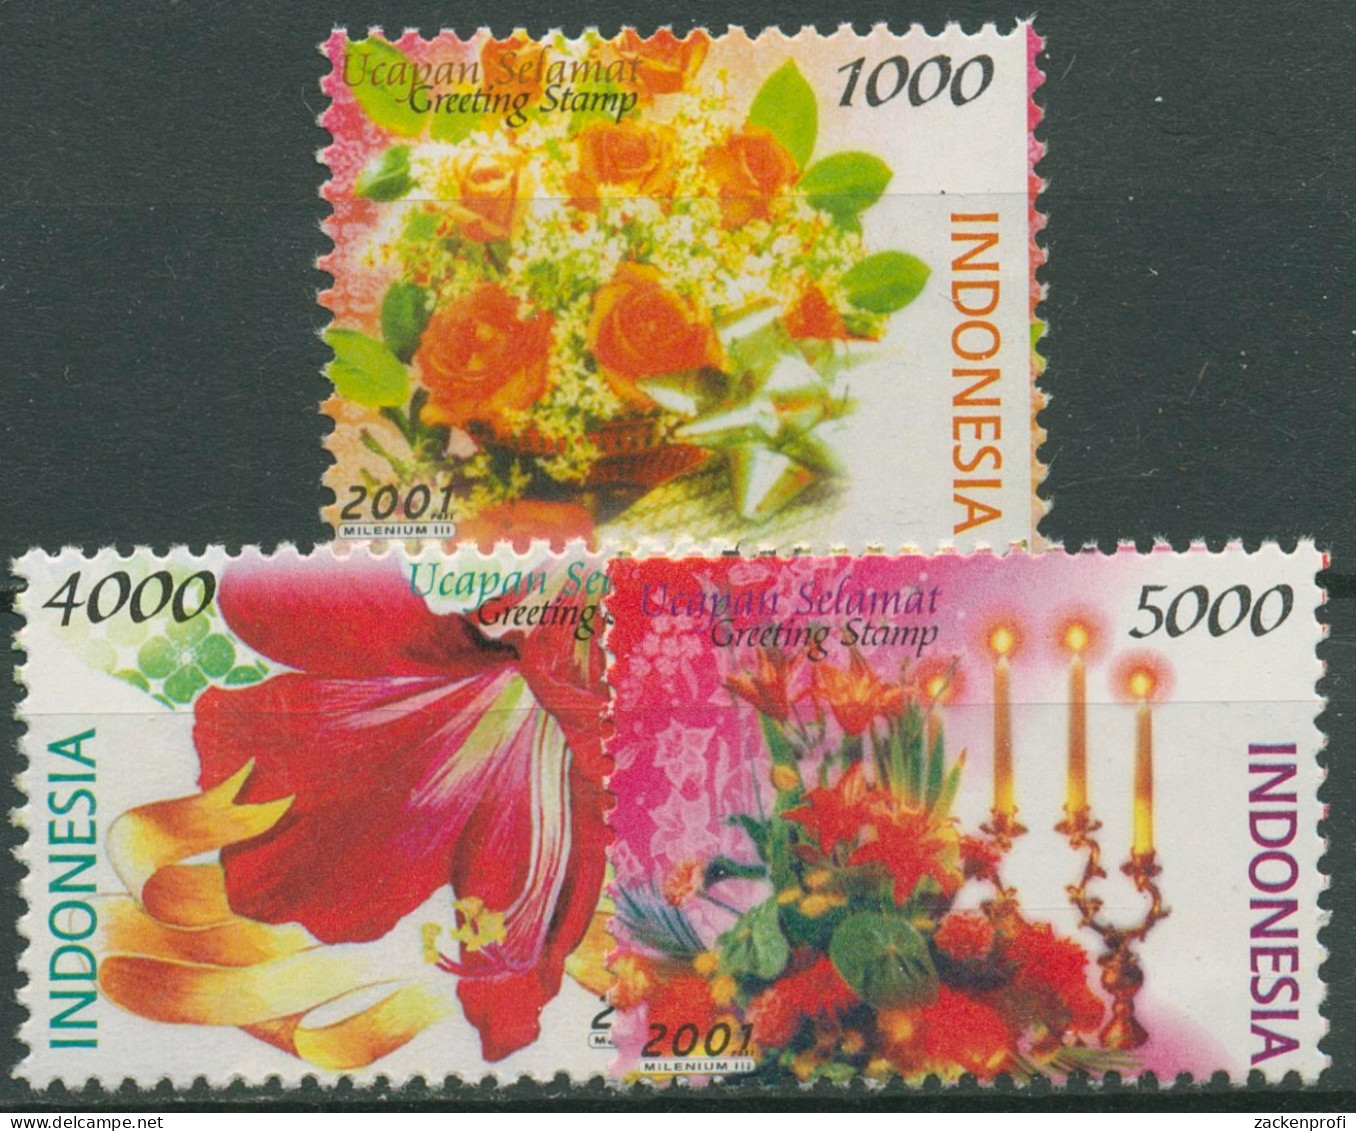 Indonesien 2001 Grußmarken Blumen Rosen Amaryllis 2103+2106/07 Postfrisch - Indonesien